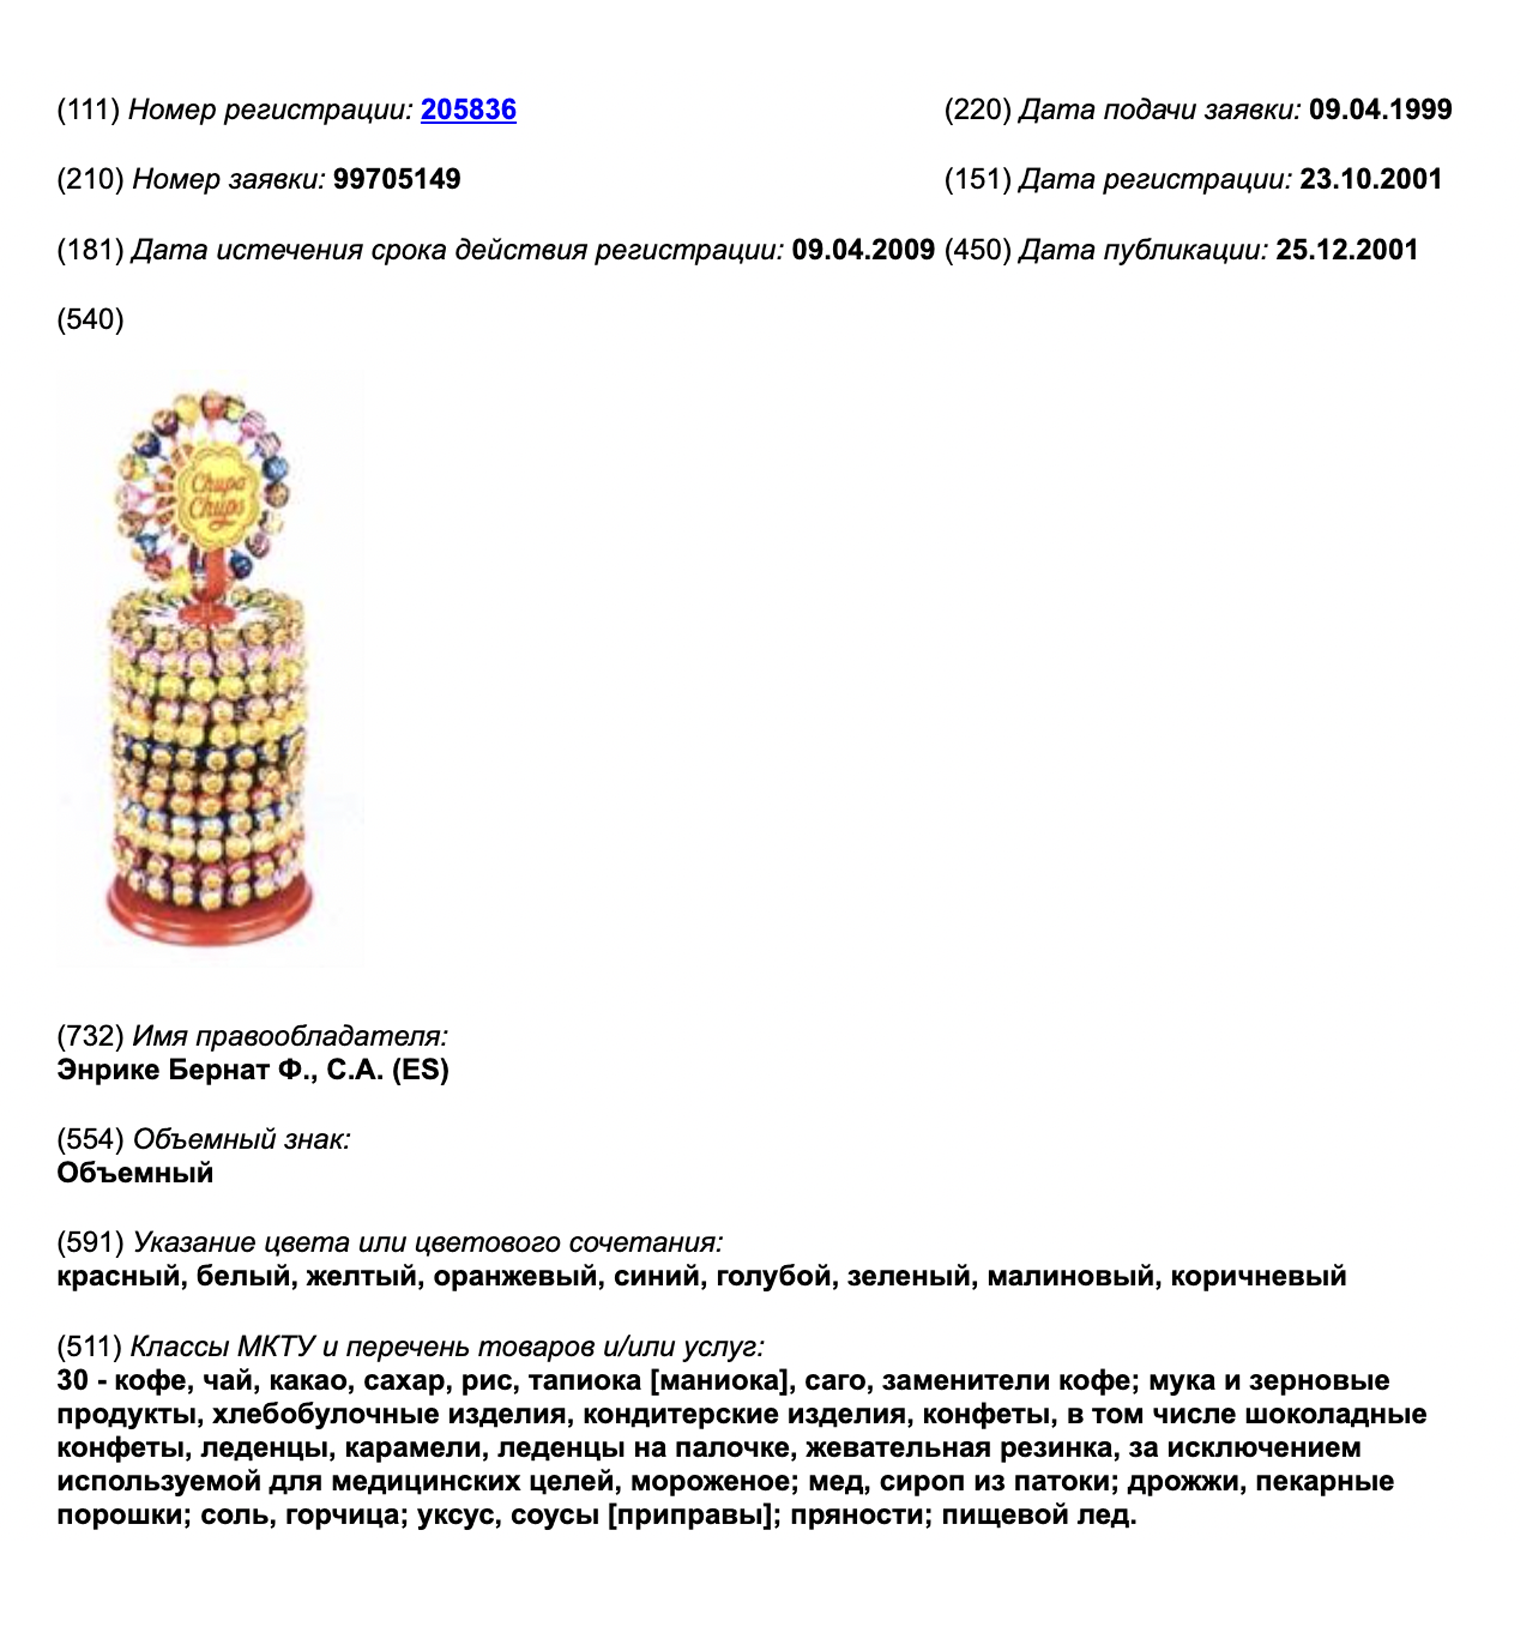 Стойка Chupa Chups зарегистрирована как товарный знак. Источник: fips.ru